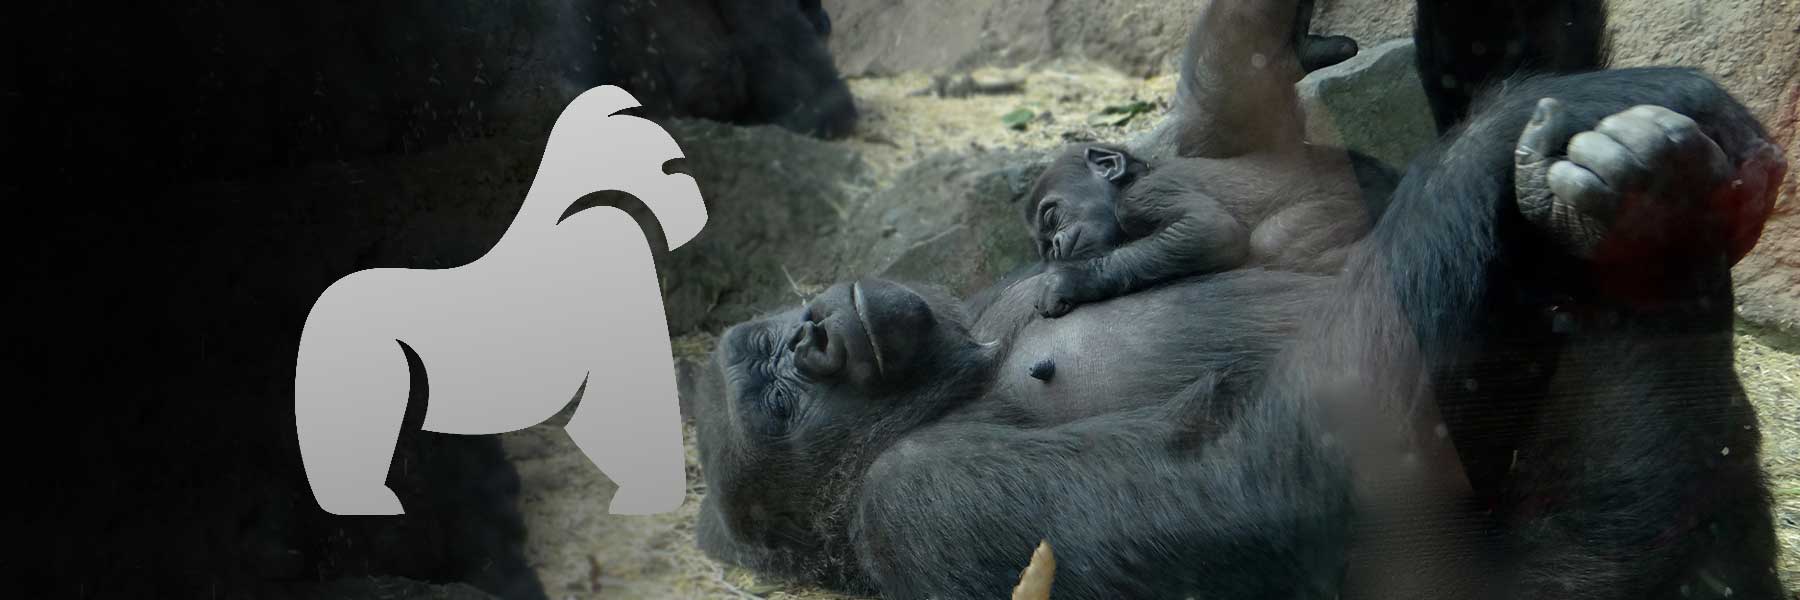 gorilla-gesund-wussten-sie-wie-gorillas-schlafen-600x600